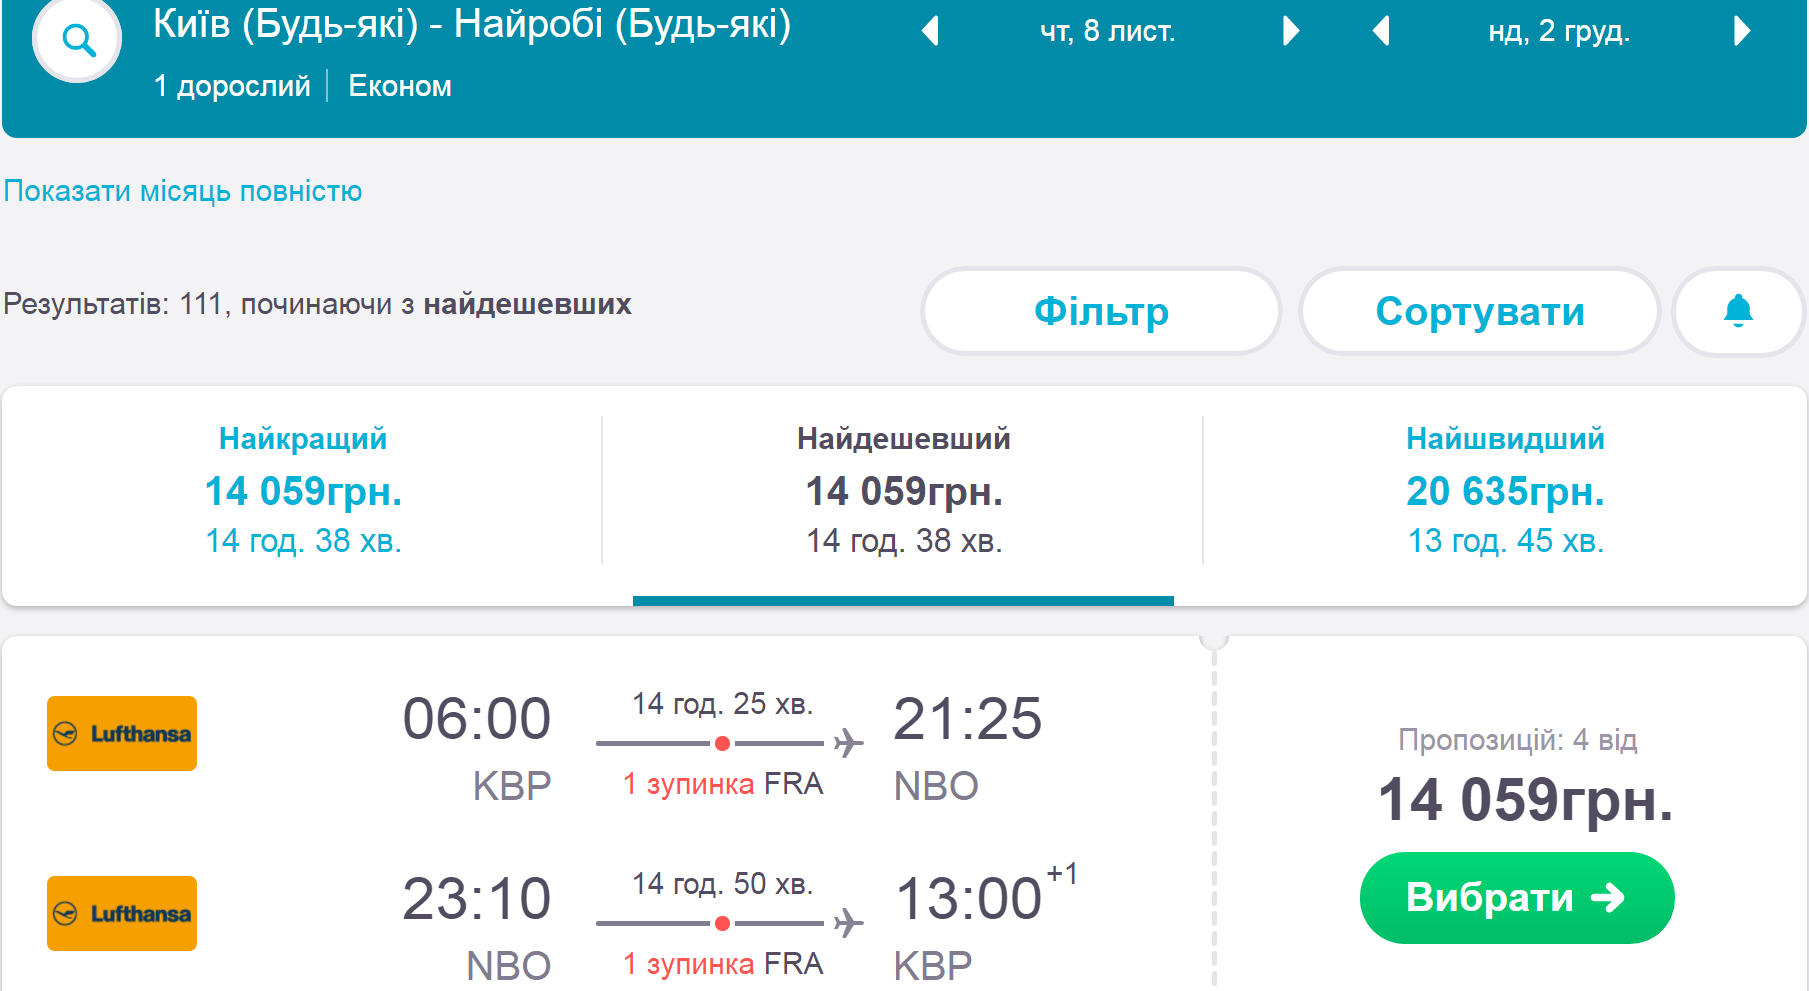 Авиабилет краснодар хабаровск цена стоимость билетов на самолеты в армении